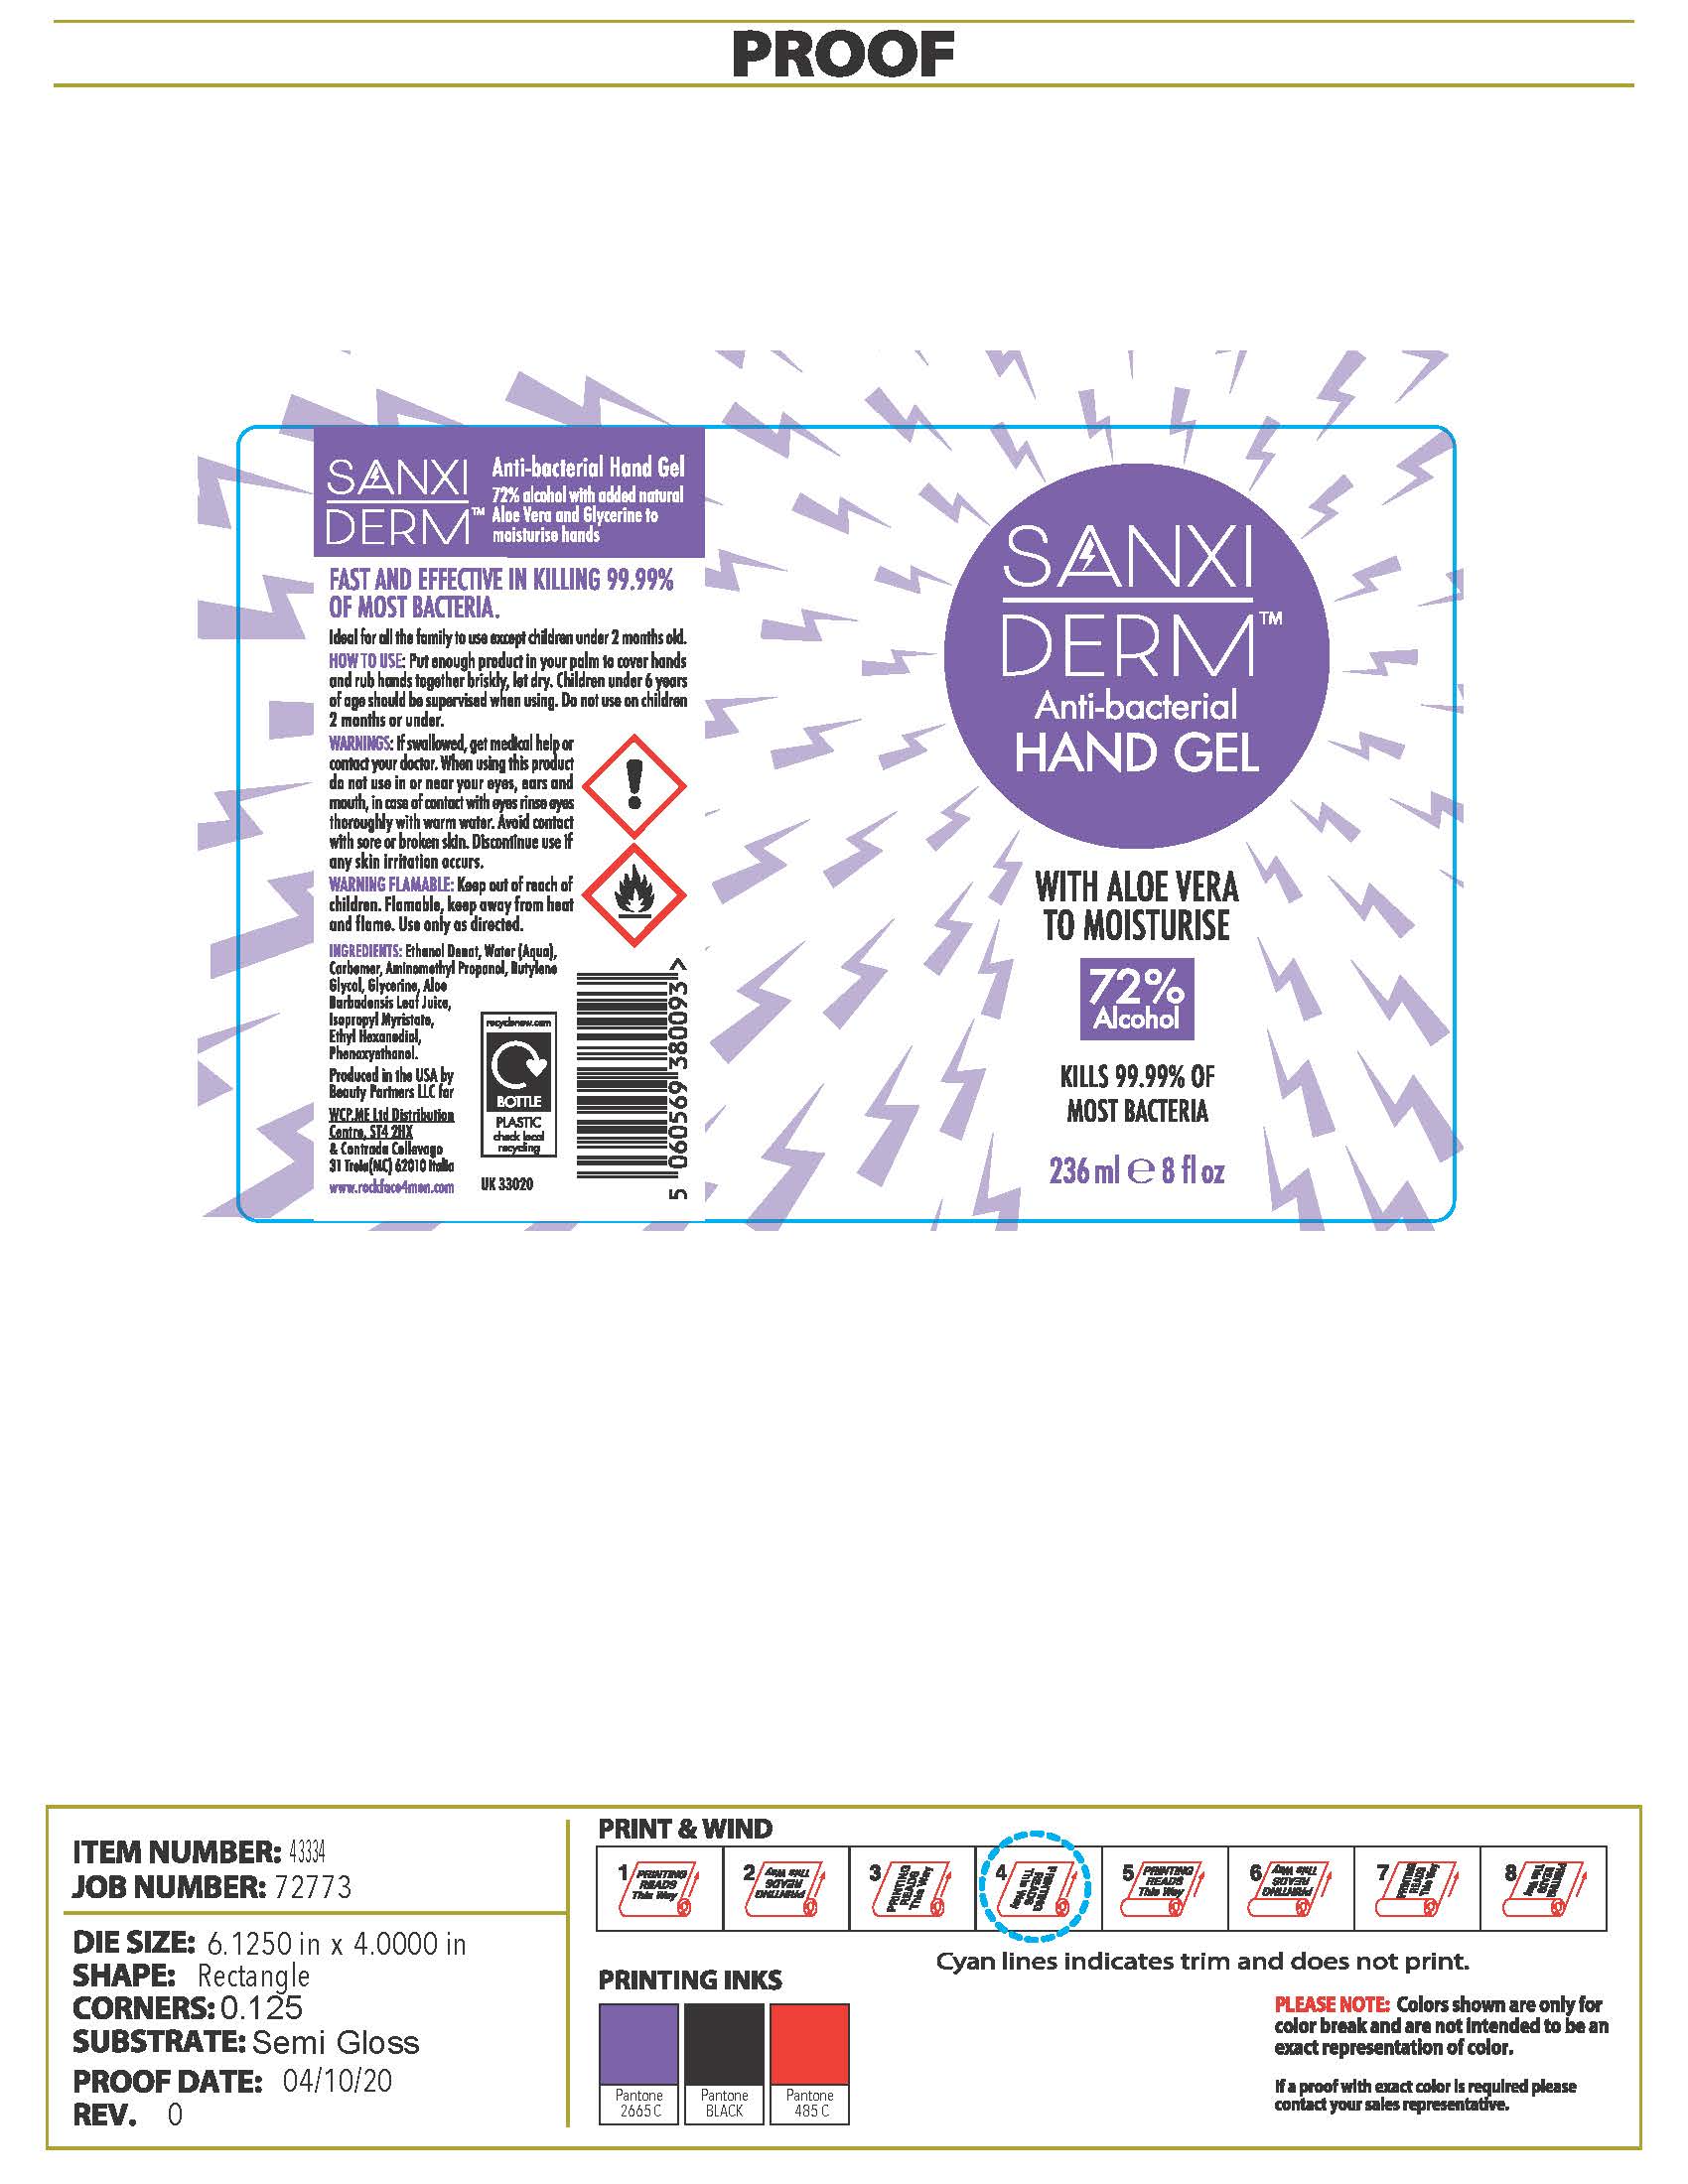 Packaging Label-SANXIDERM Anti-bacterial Hand Gel 8OZ